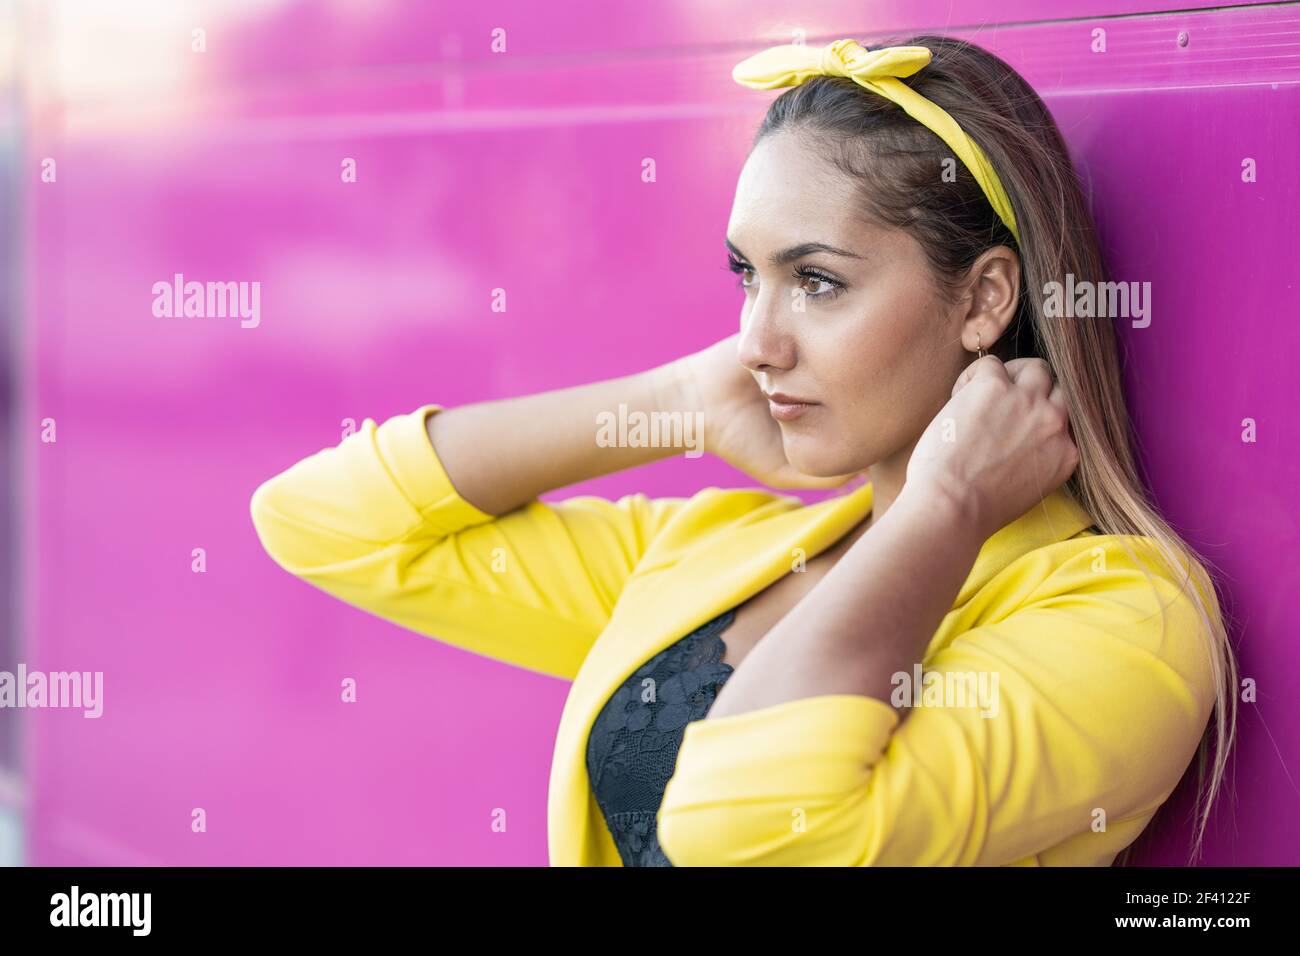 Junge Frau mit gelber Jacke und Stirnband, in der Nähe einer städtischen lila Wand. Junge Frau mit gelber Jacke und Stirnband Stockfoto